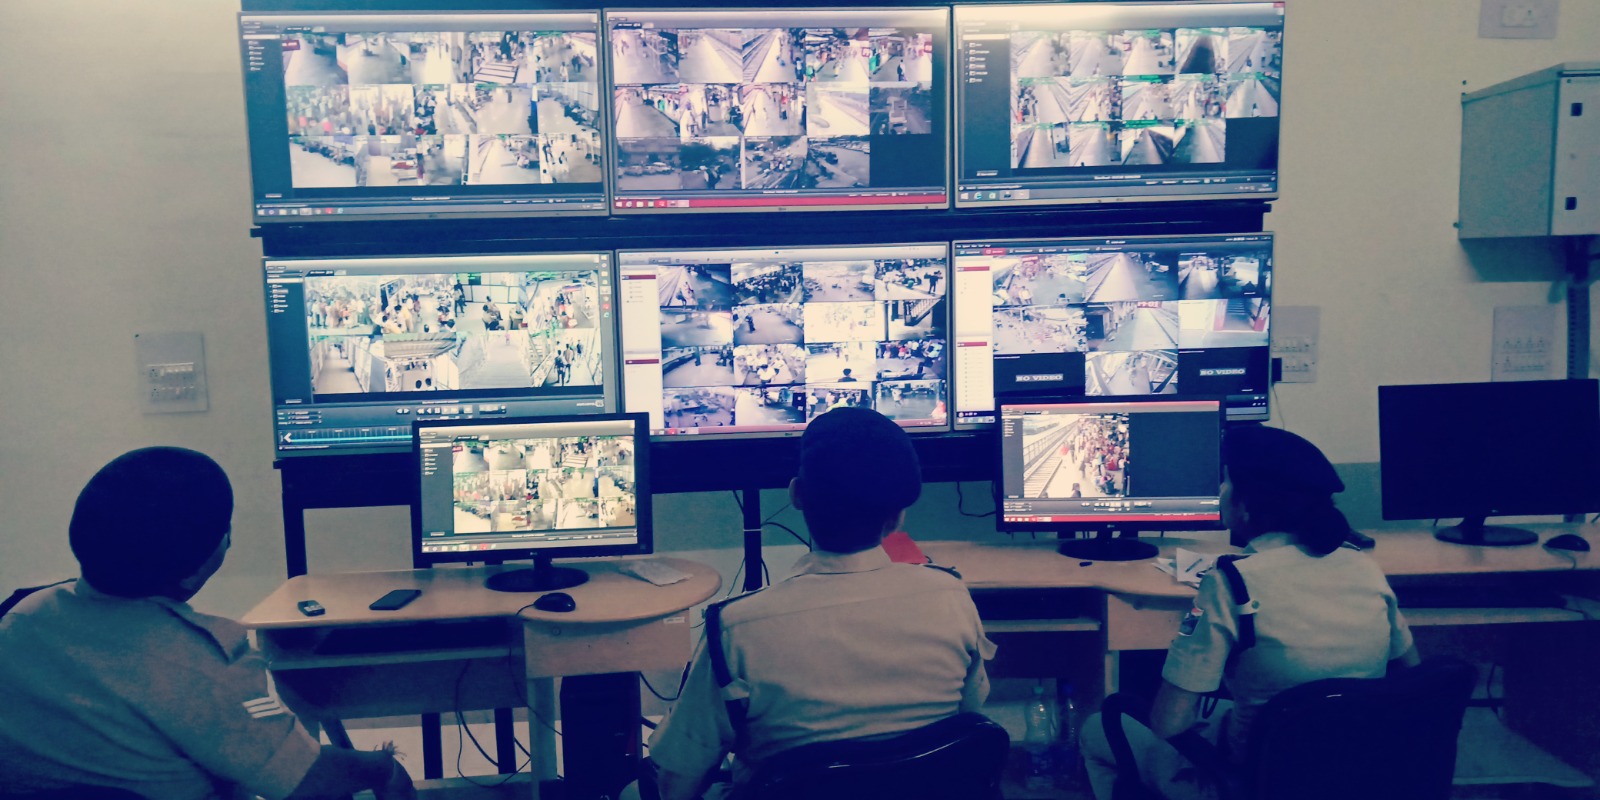 380 सीसीटीवी कैमरों की मदद से दपूमरे के 14 स्टेशनों की सुरक्षा रायपुर से